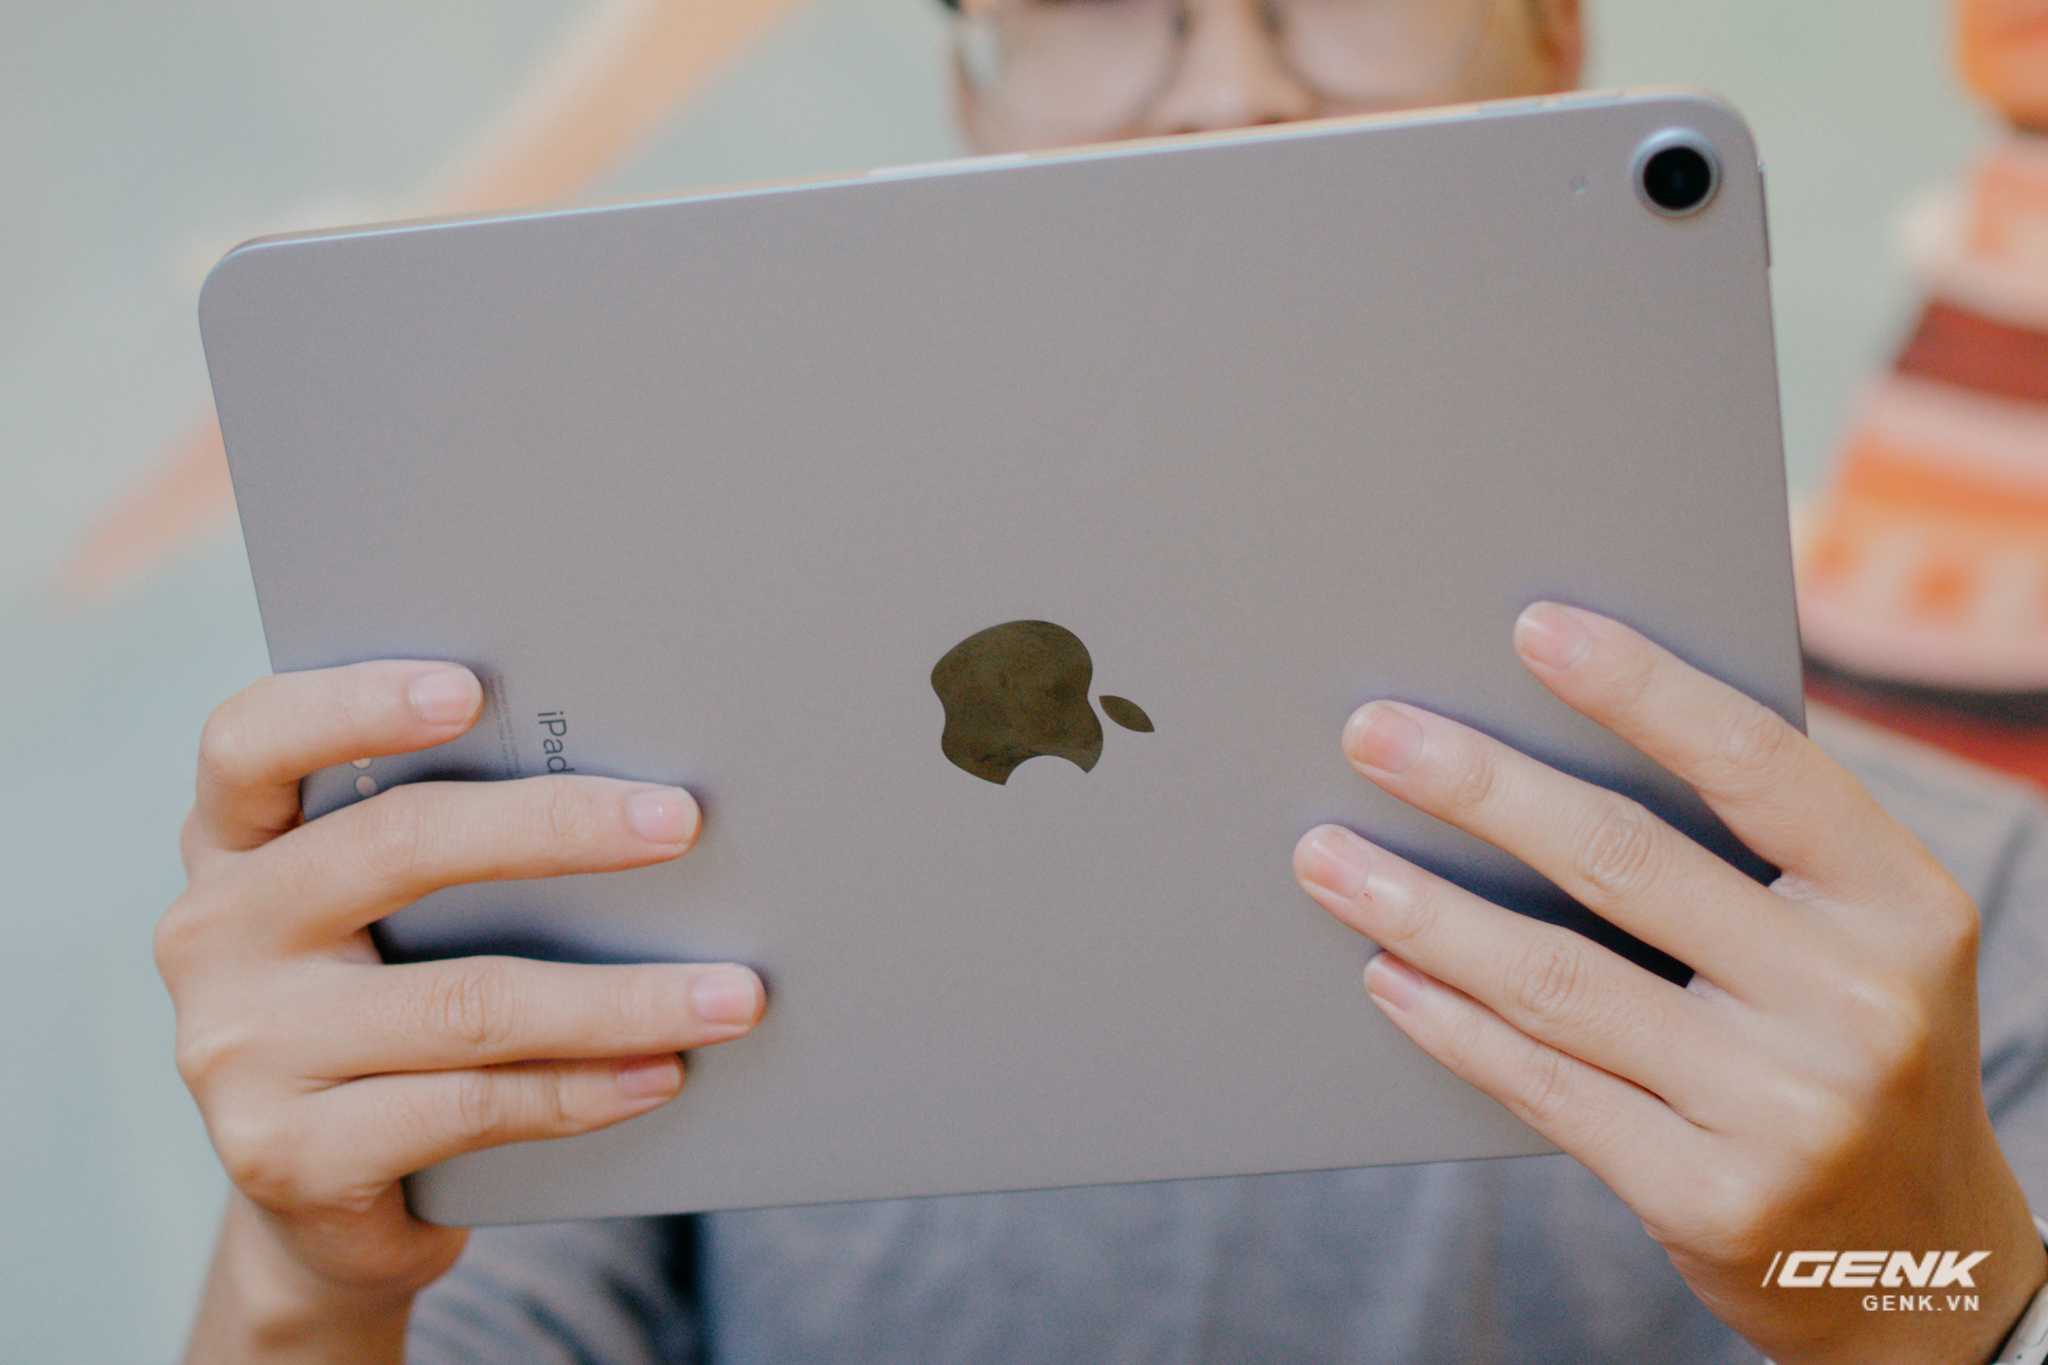 Đánh giá iPad Air 4: Tốt, nhưng chưa nên mua ngay - Ảnh 1.